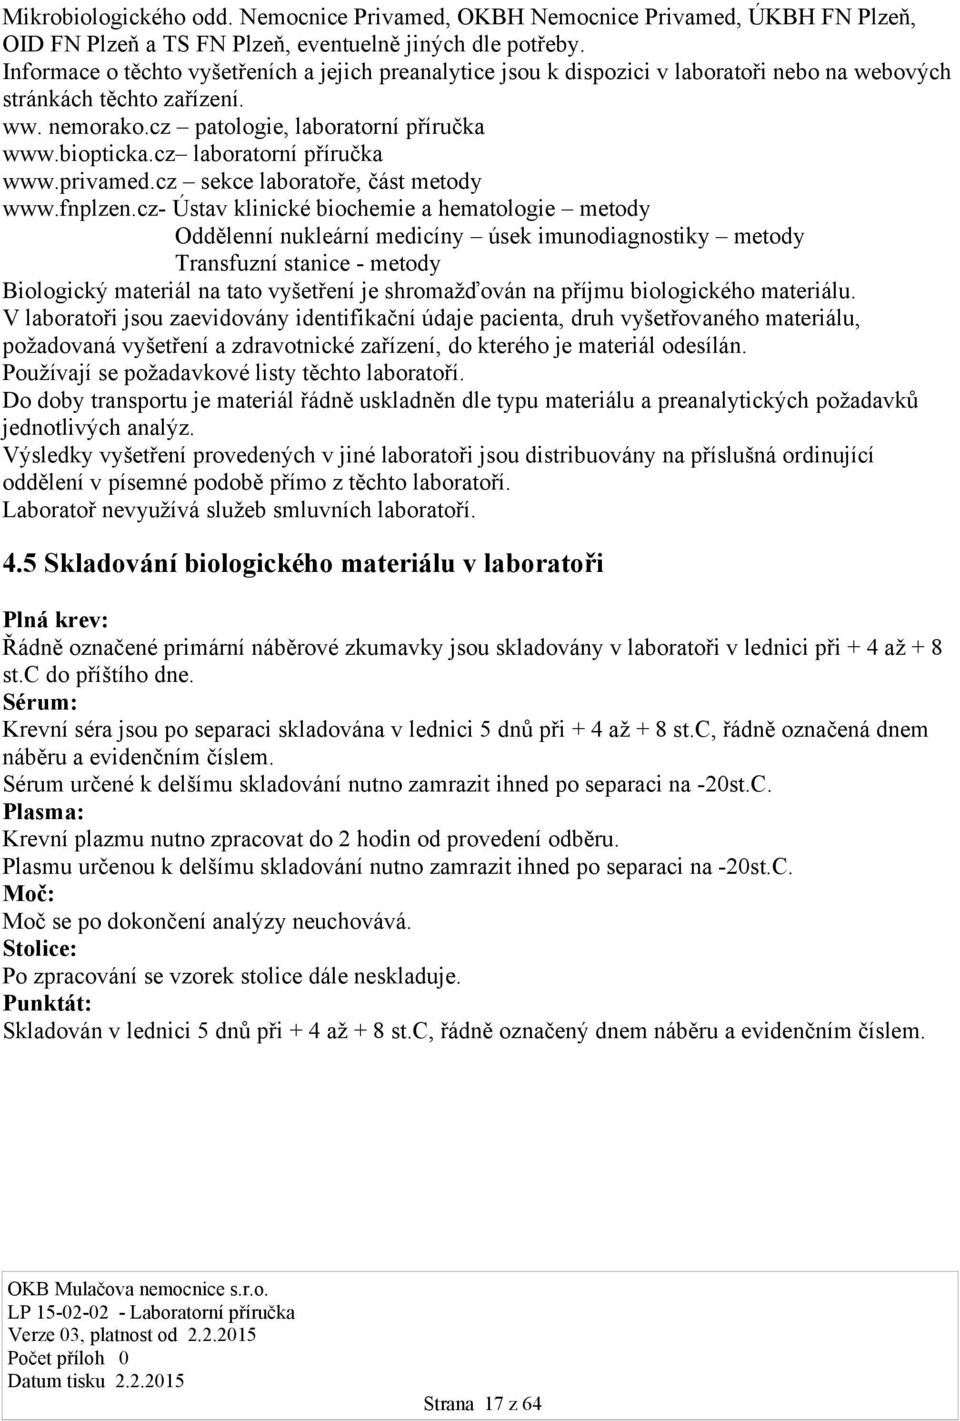 cz laboratorní příručka www.privamed.cz sekce laboratoře, část metody www.fnplzen.